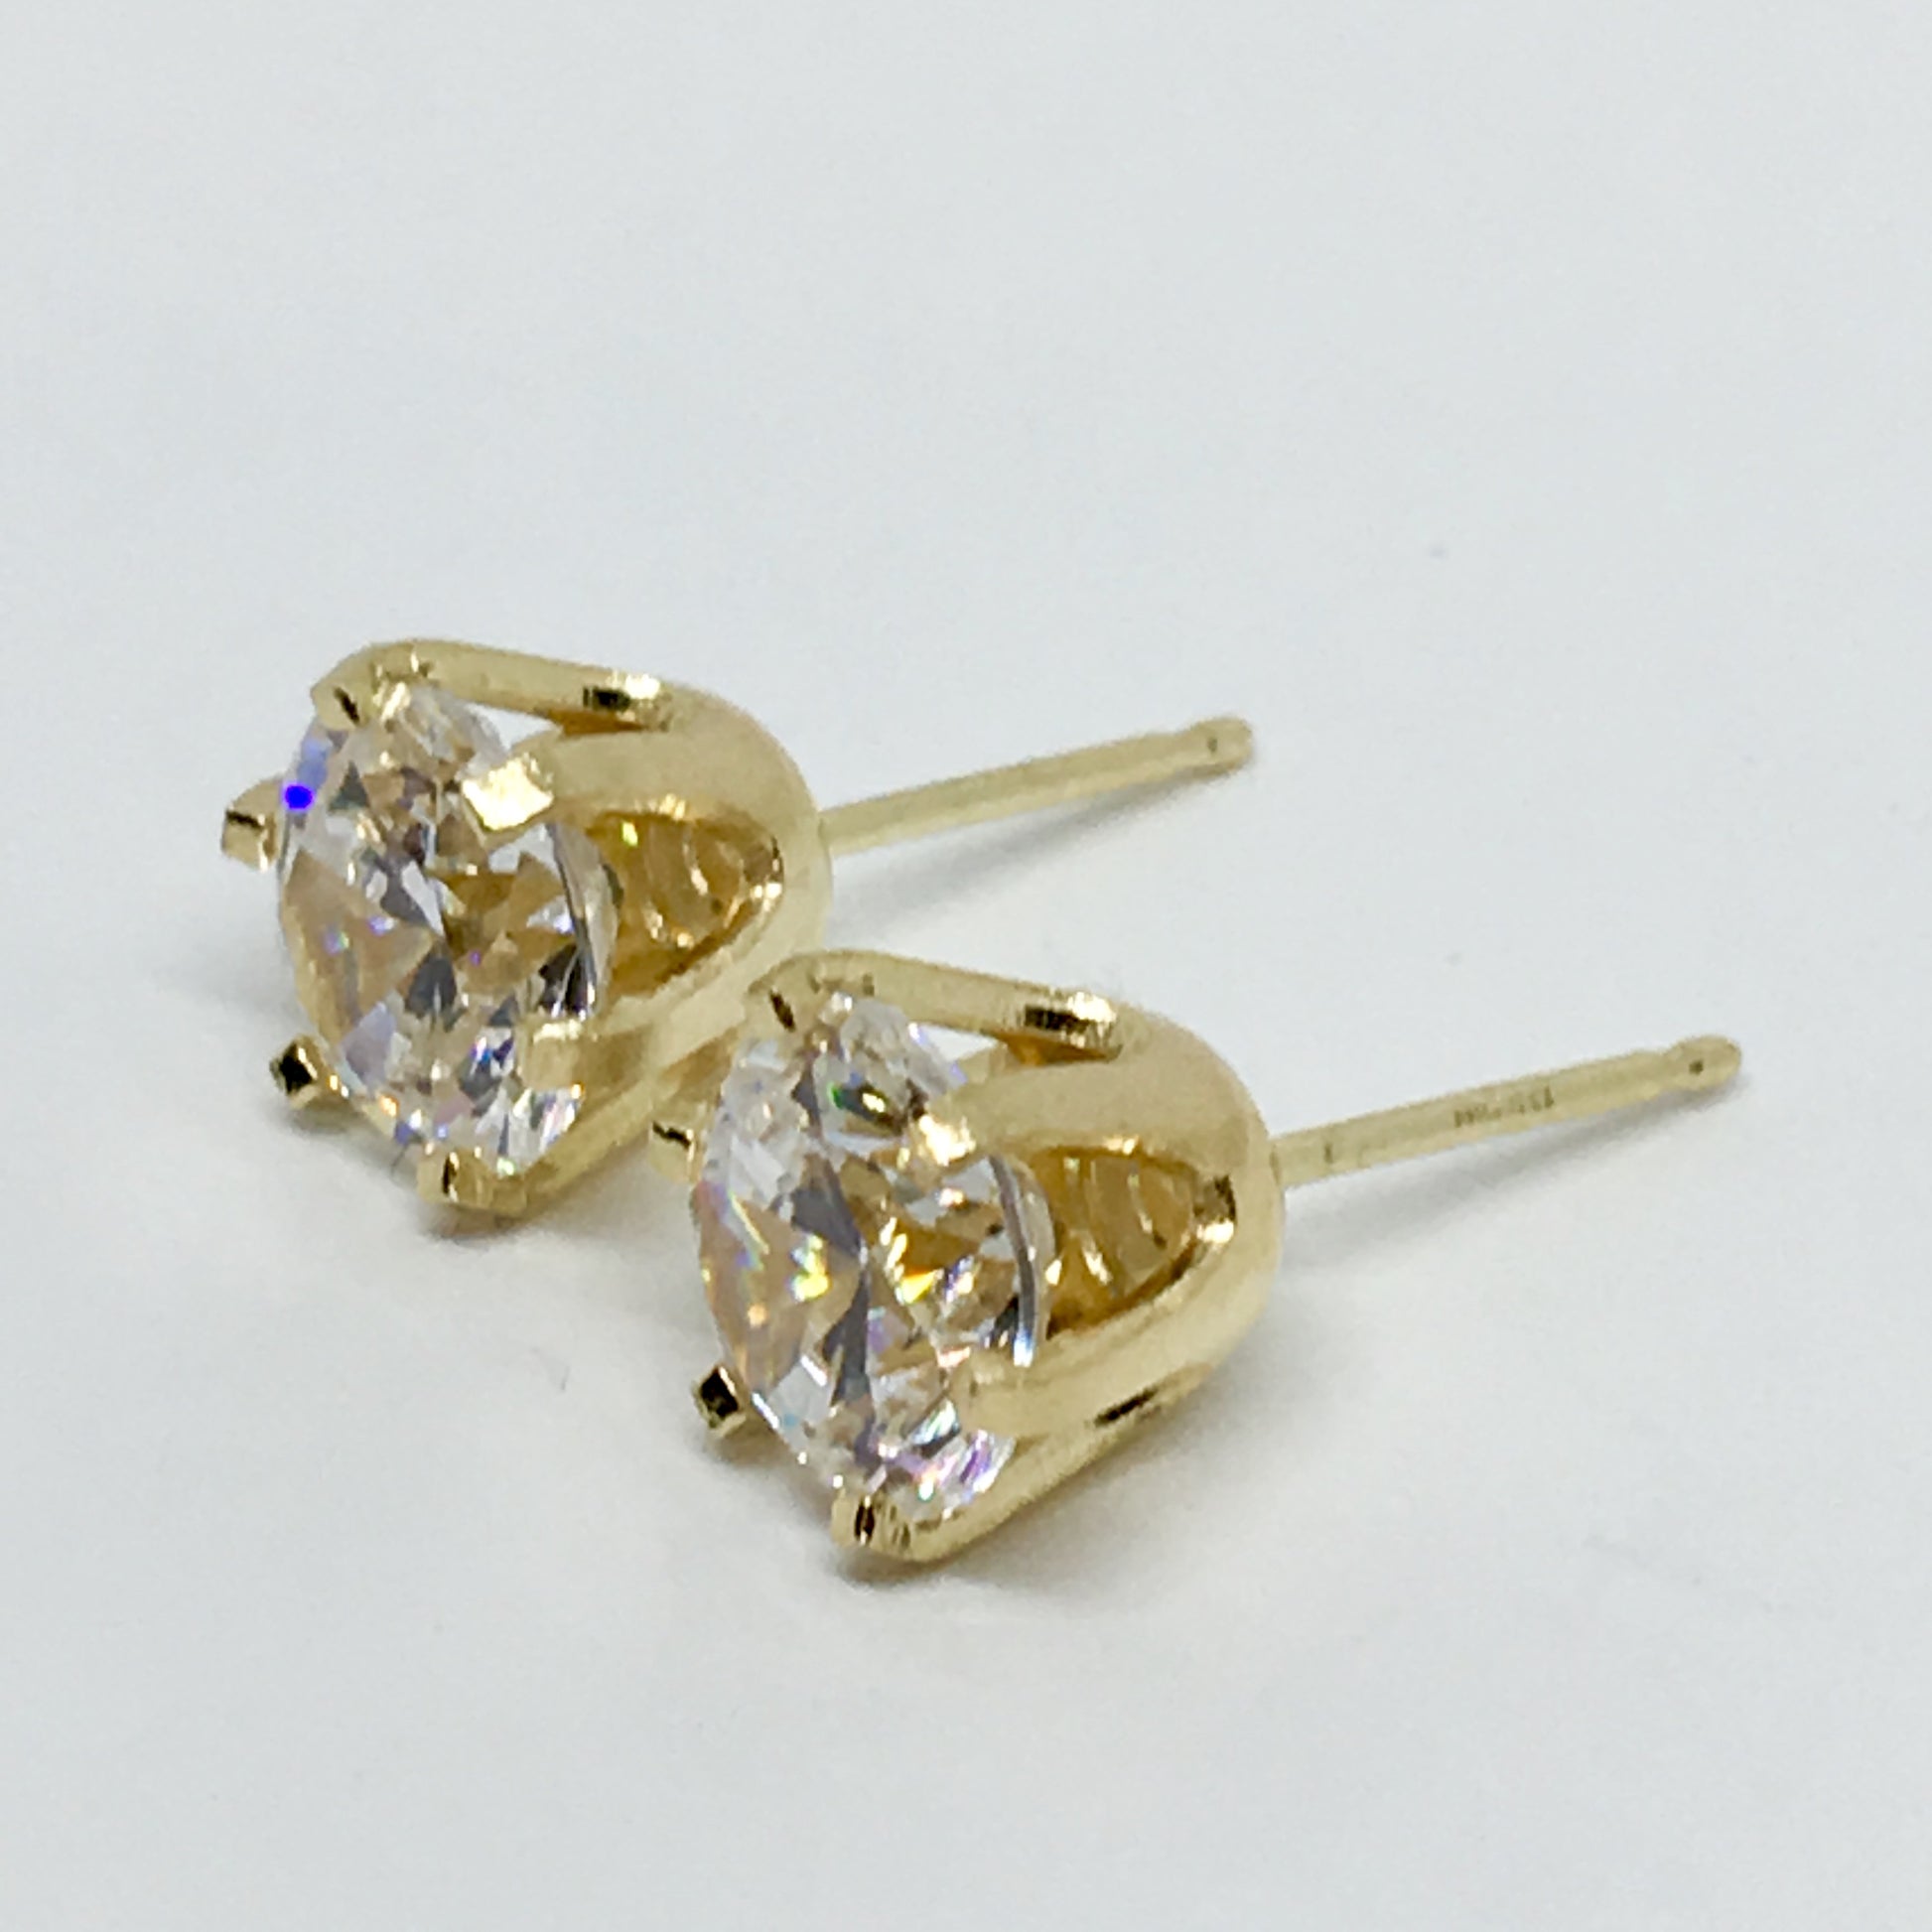 Accessory - Earrings - 14k Gold Sparkly 7 mm Diamond Alternative CZ Stud Earrings 